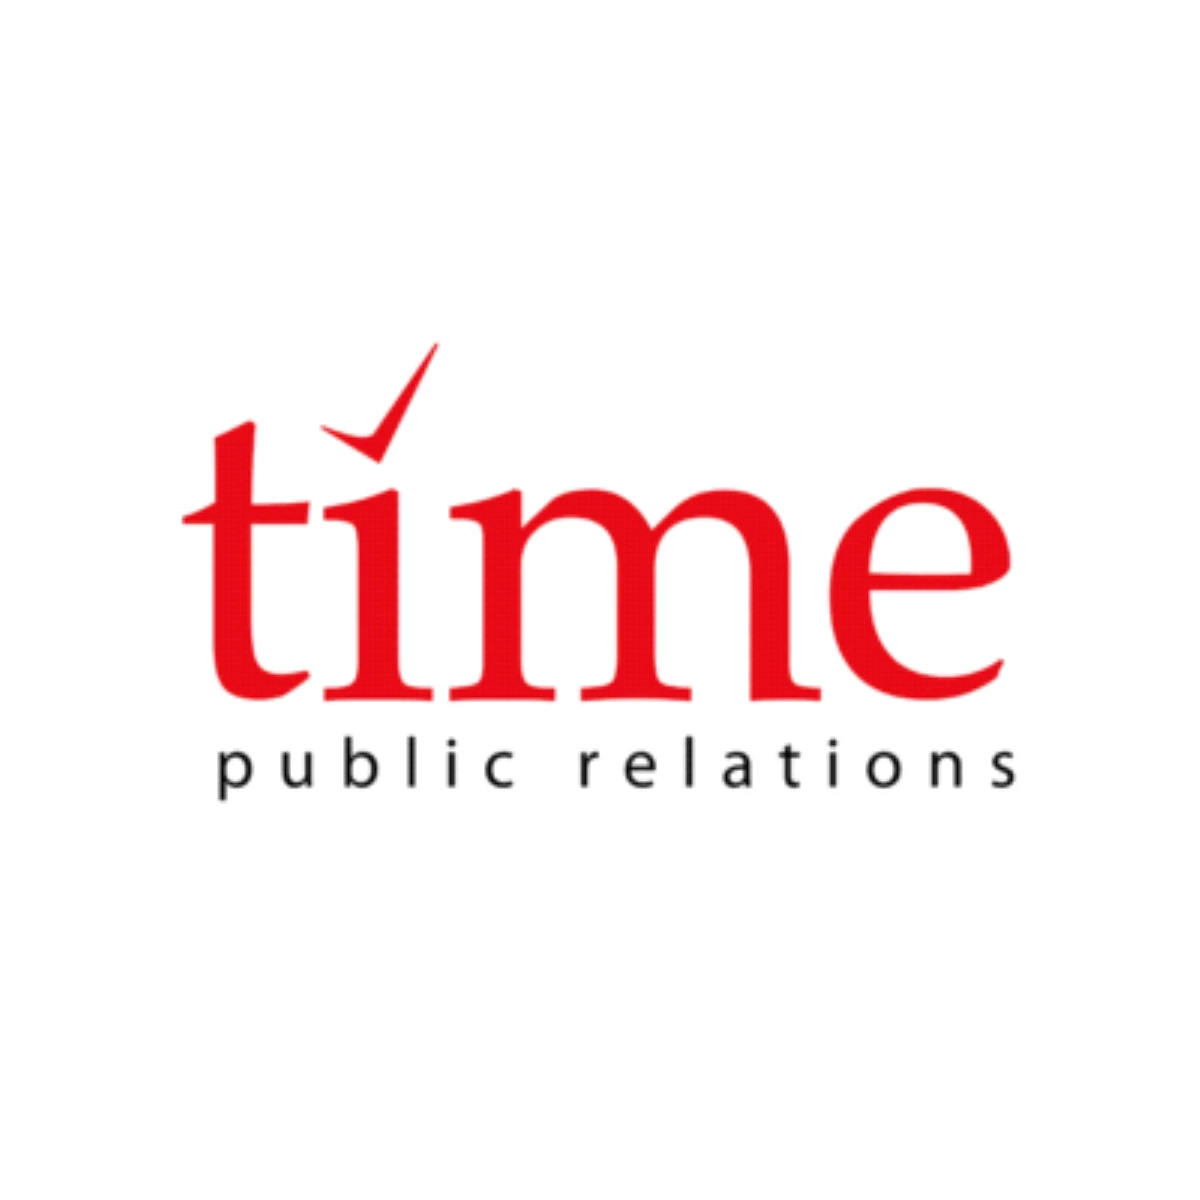 Timepr Kurumsalhaberler.com\'un İş Ortakları Arasına Katıldı